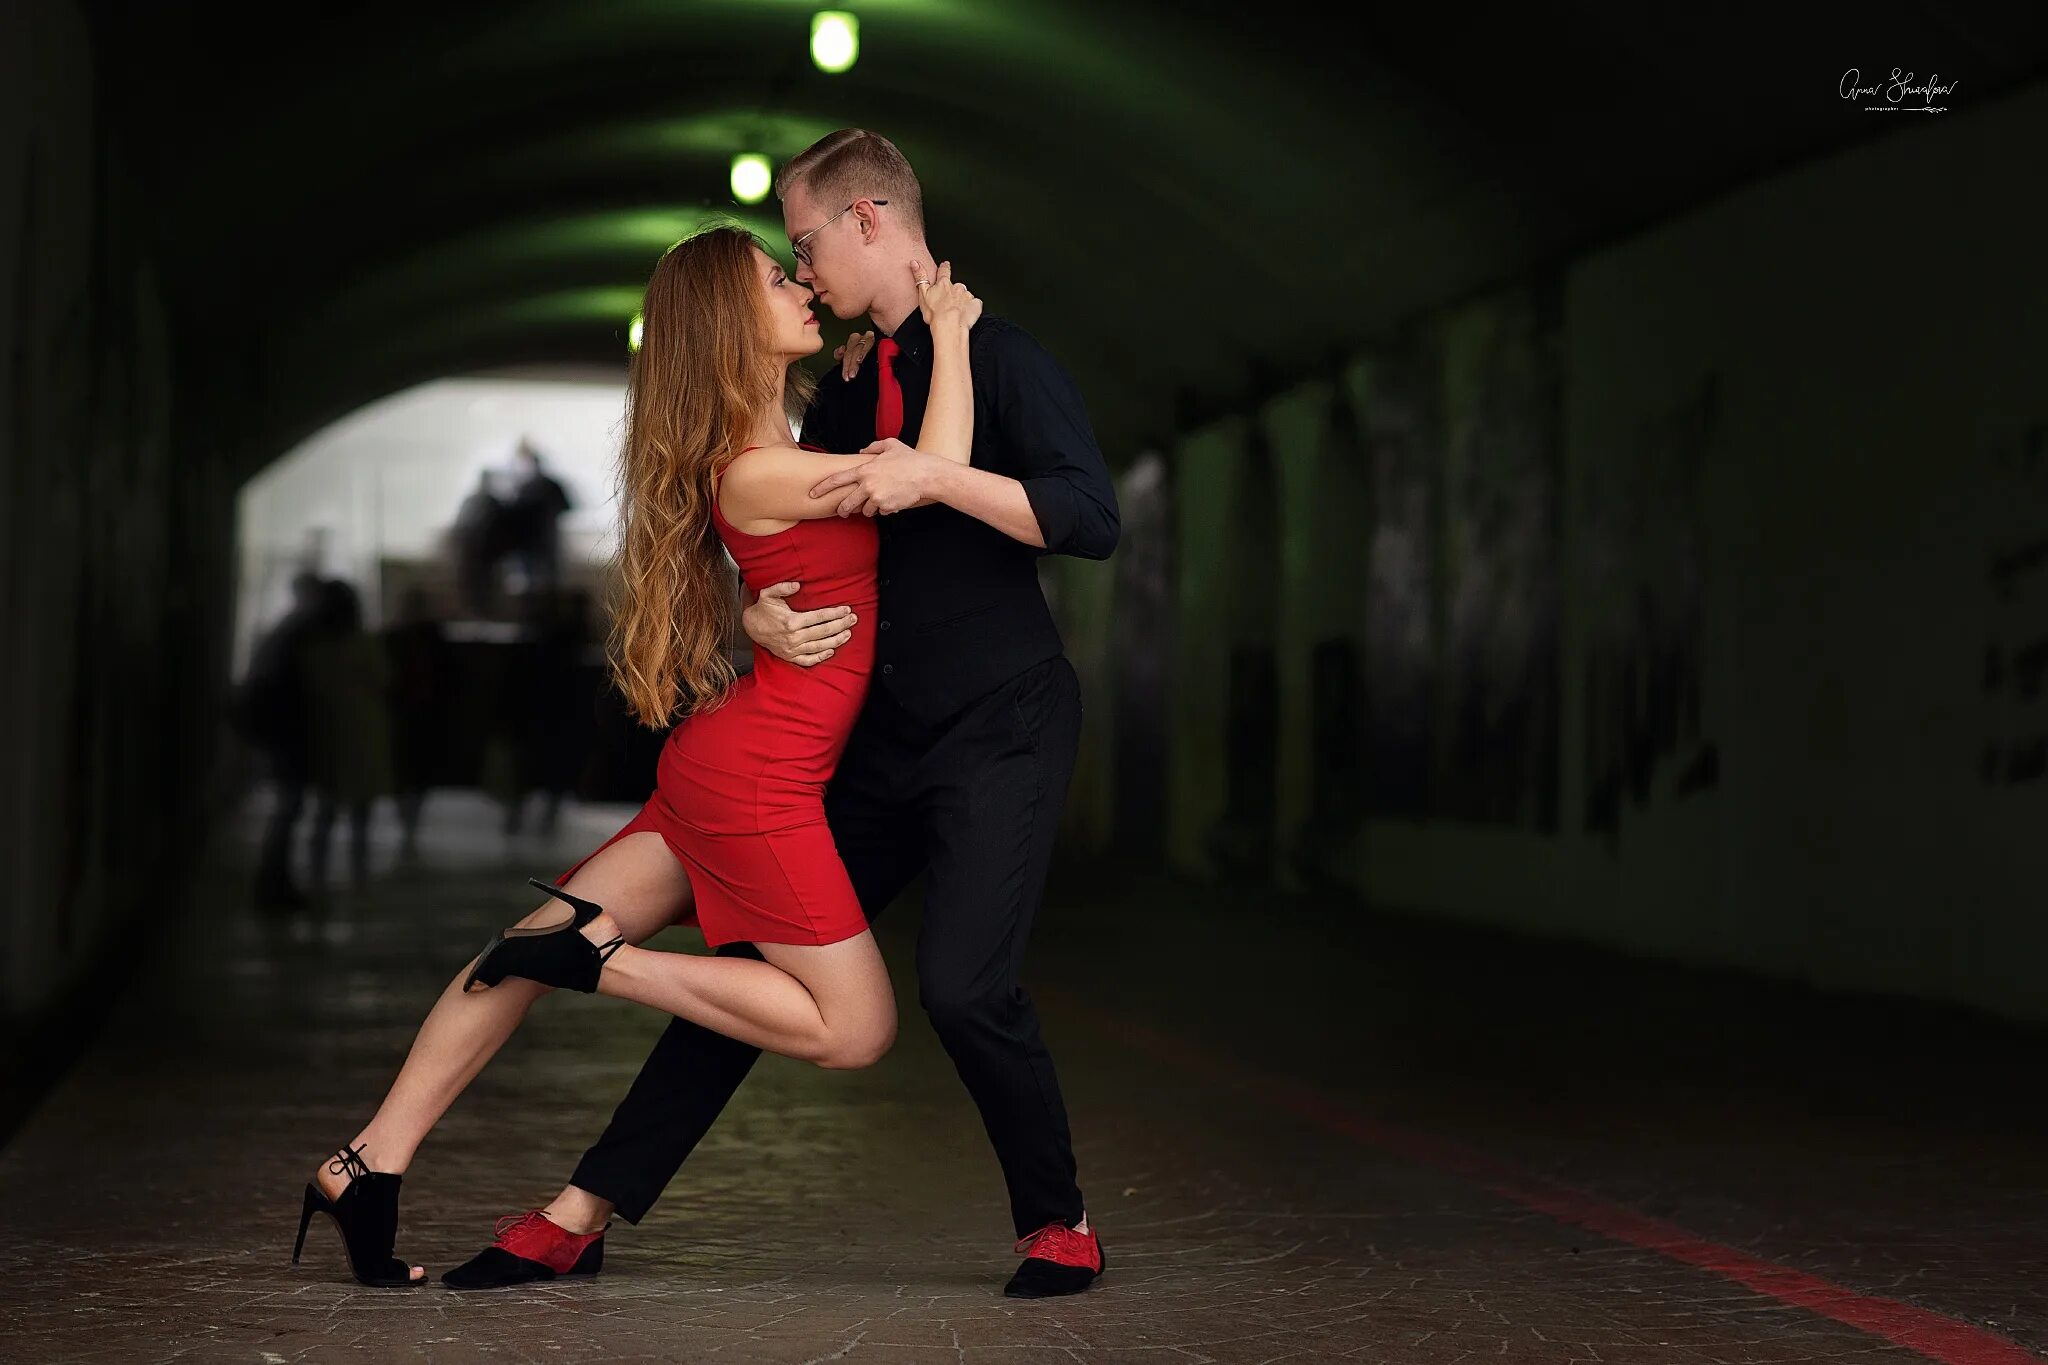 Муж в платье видео. Девушка танцует в платье. Танец страсти. Мужчина в платье танцует. Танцы пара красное платье.